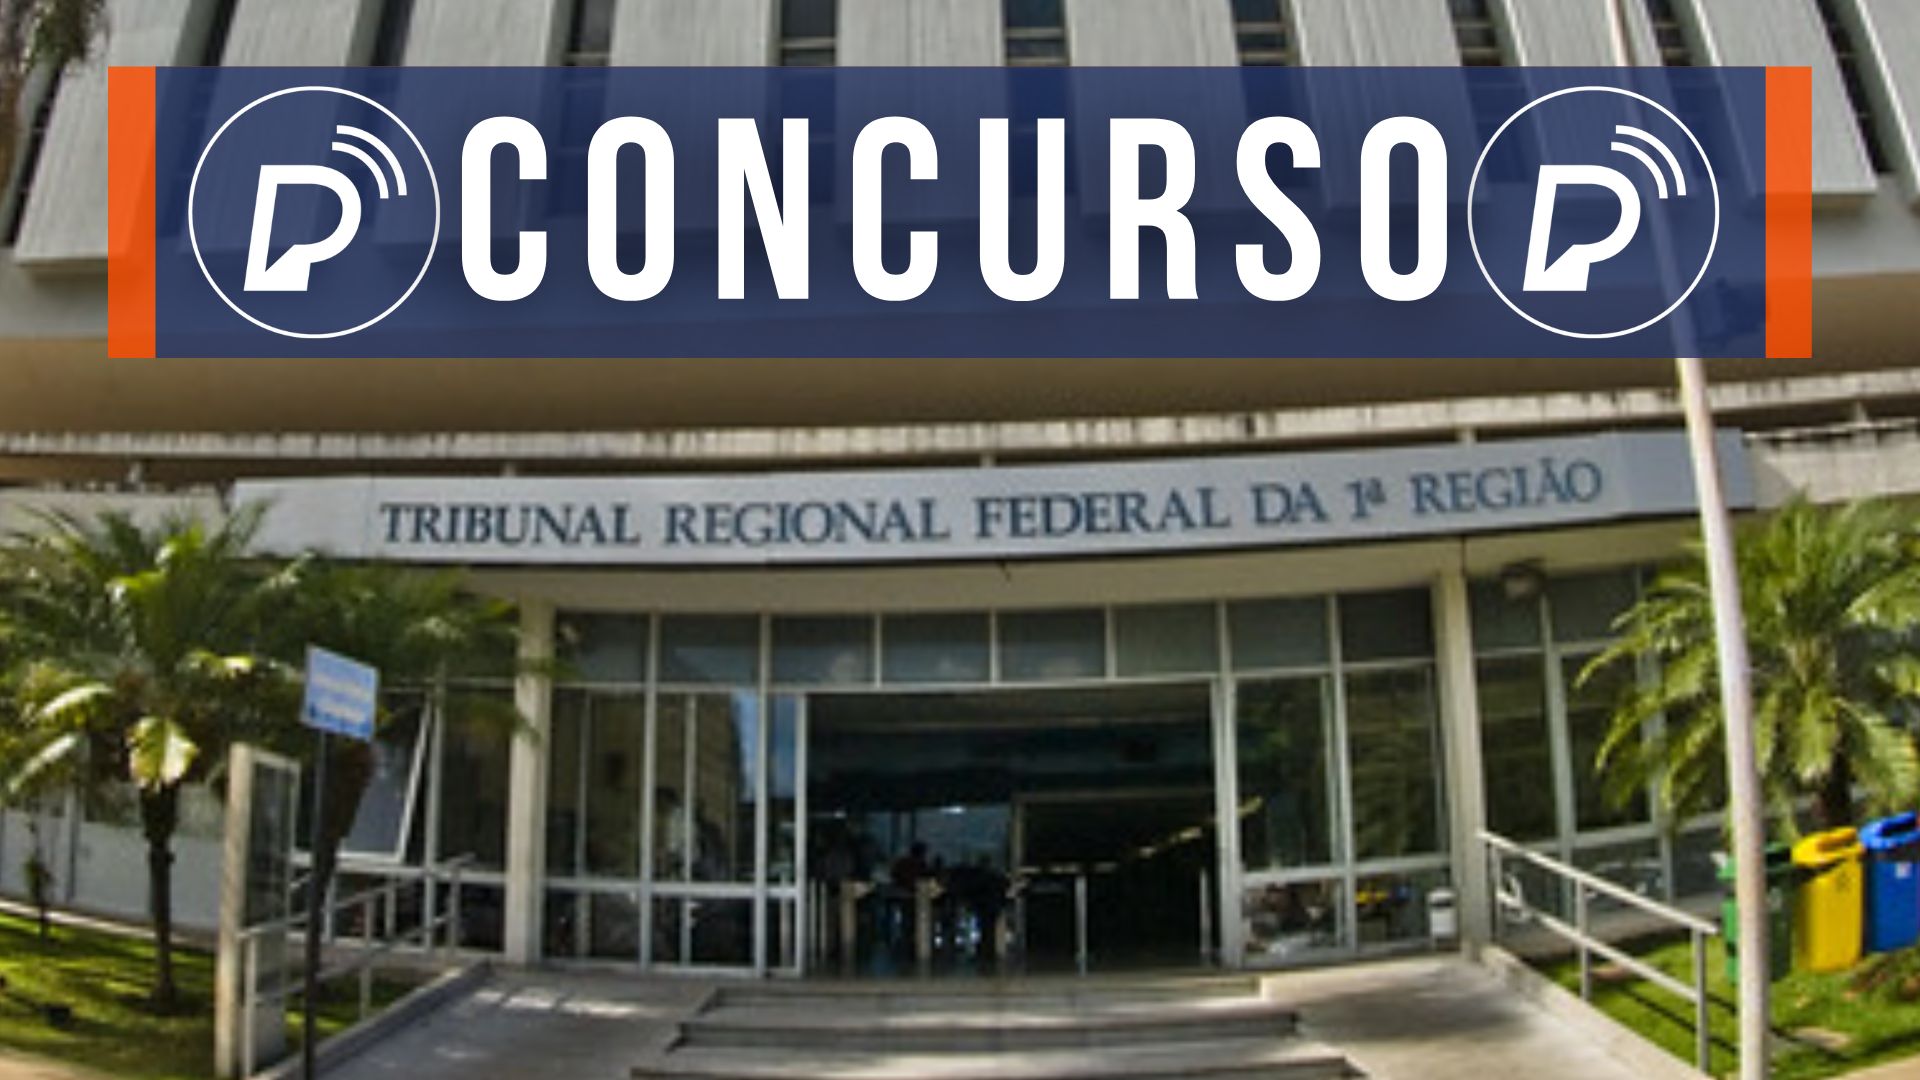 Concurso do Tribunal Regional Federal. Foto: Divulgação